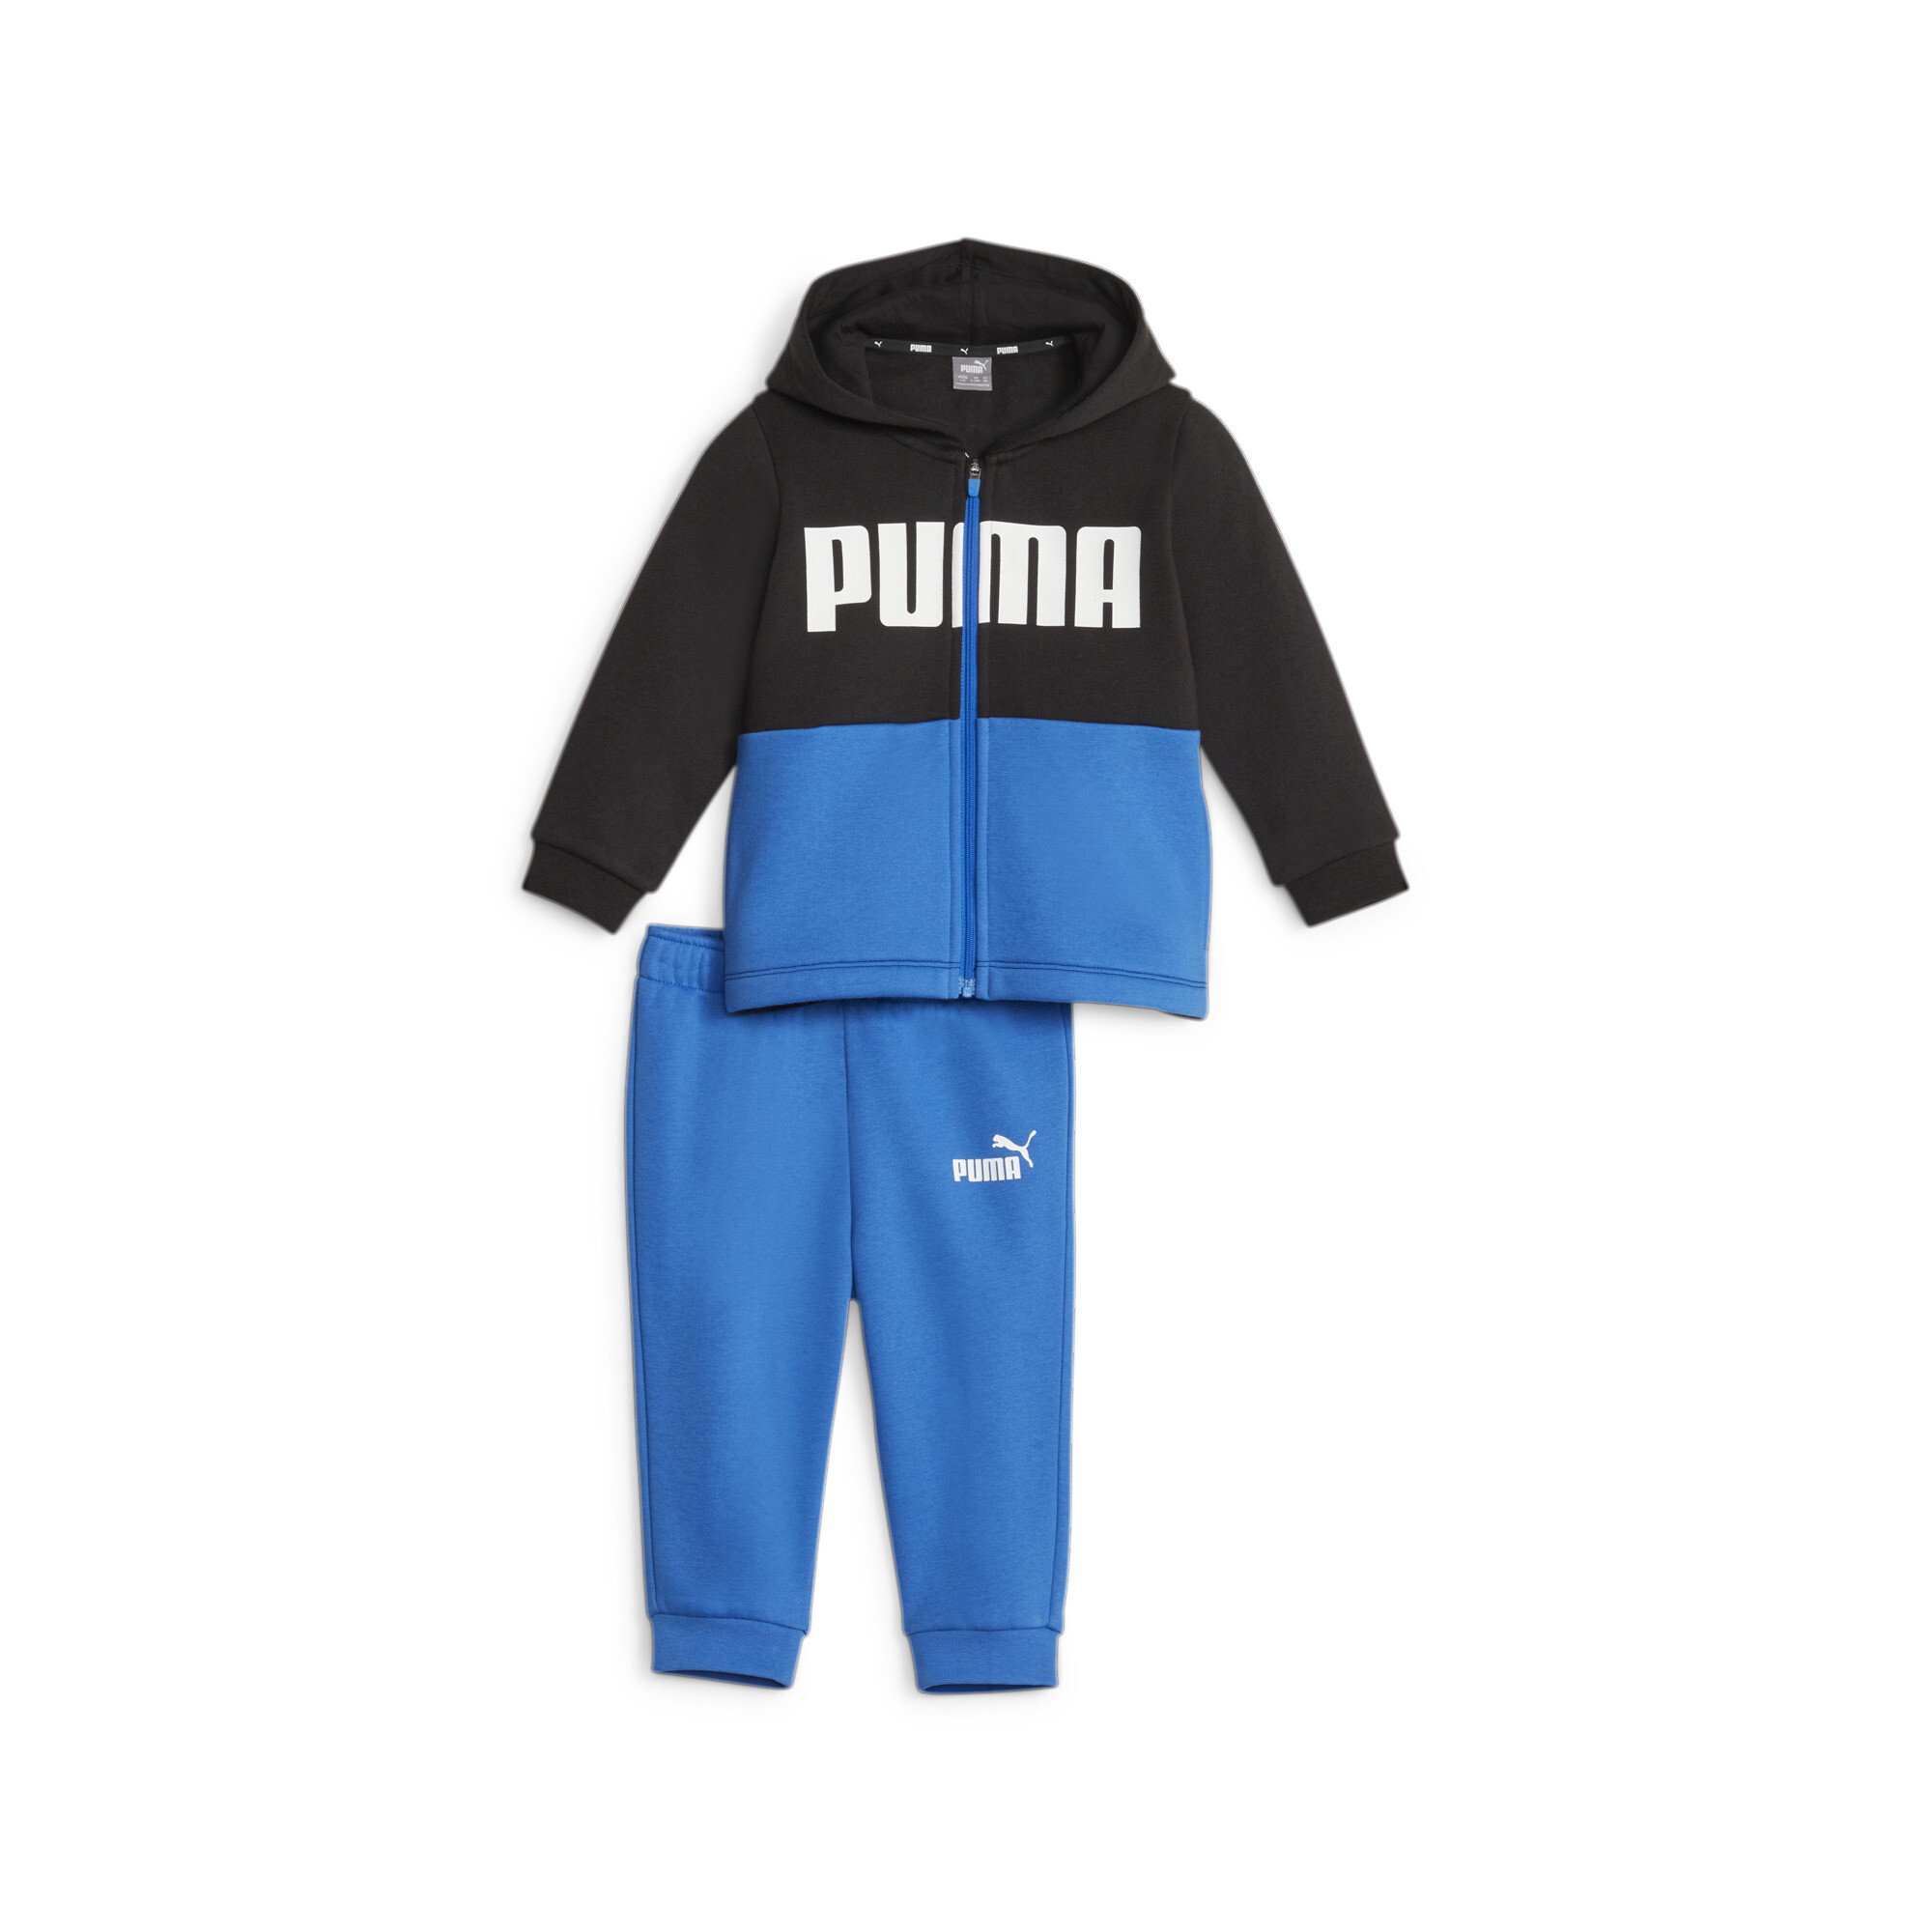 PUMA Minicats Colourblock Jogger Suit Babies In Blue, Size 4-6 Months